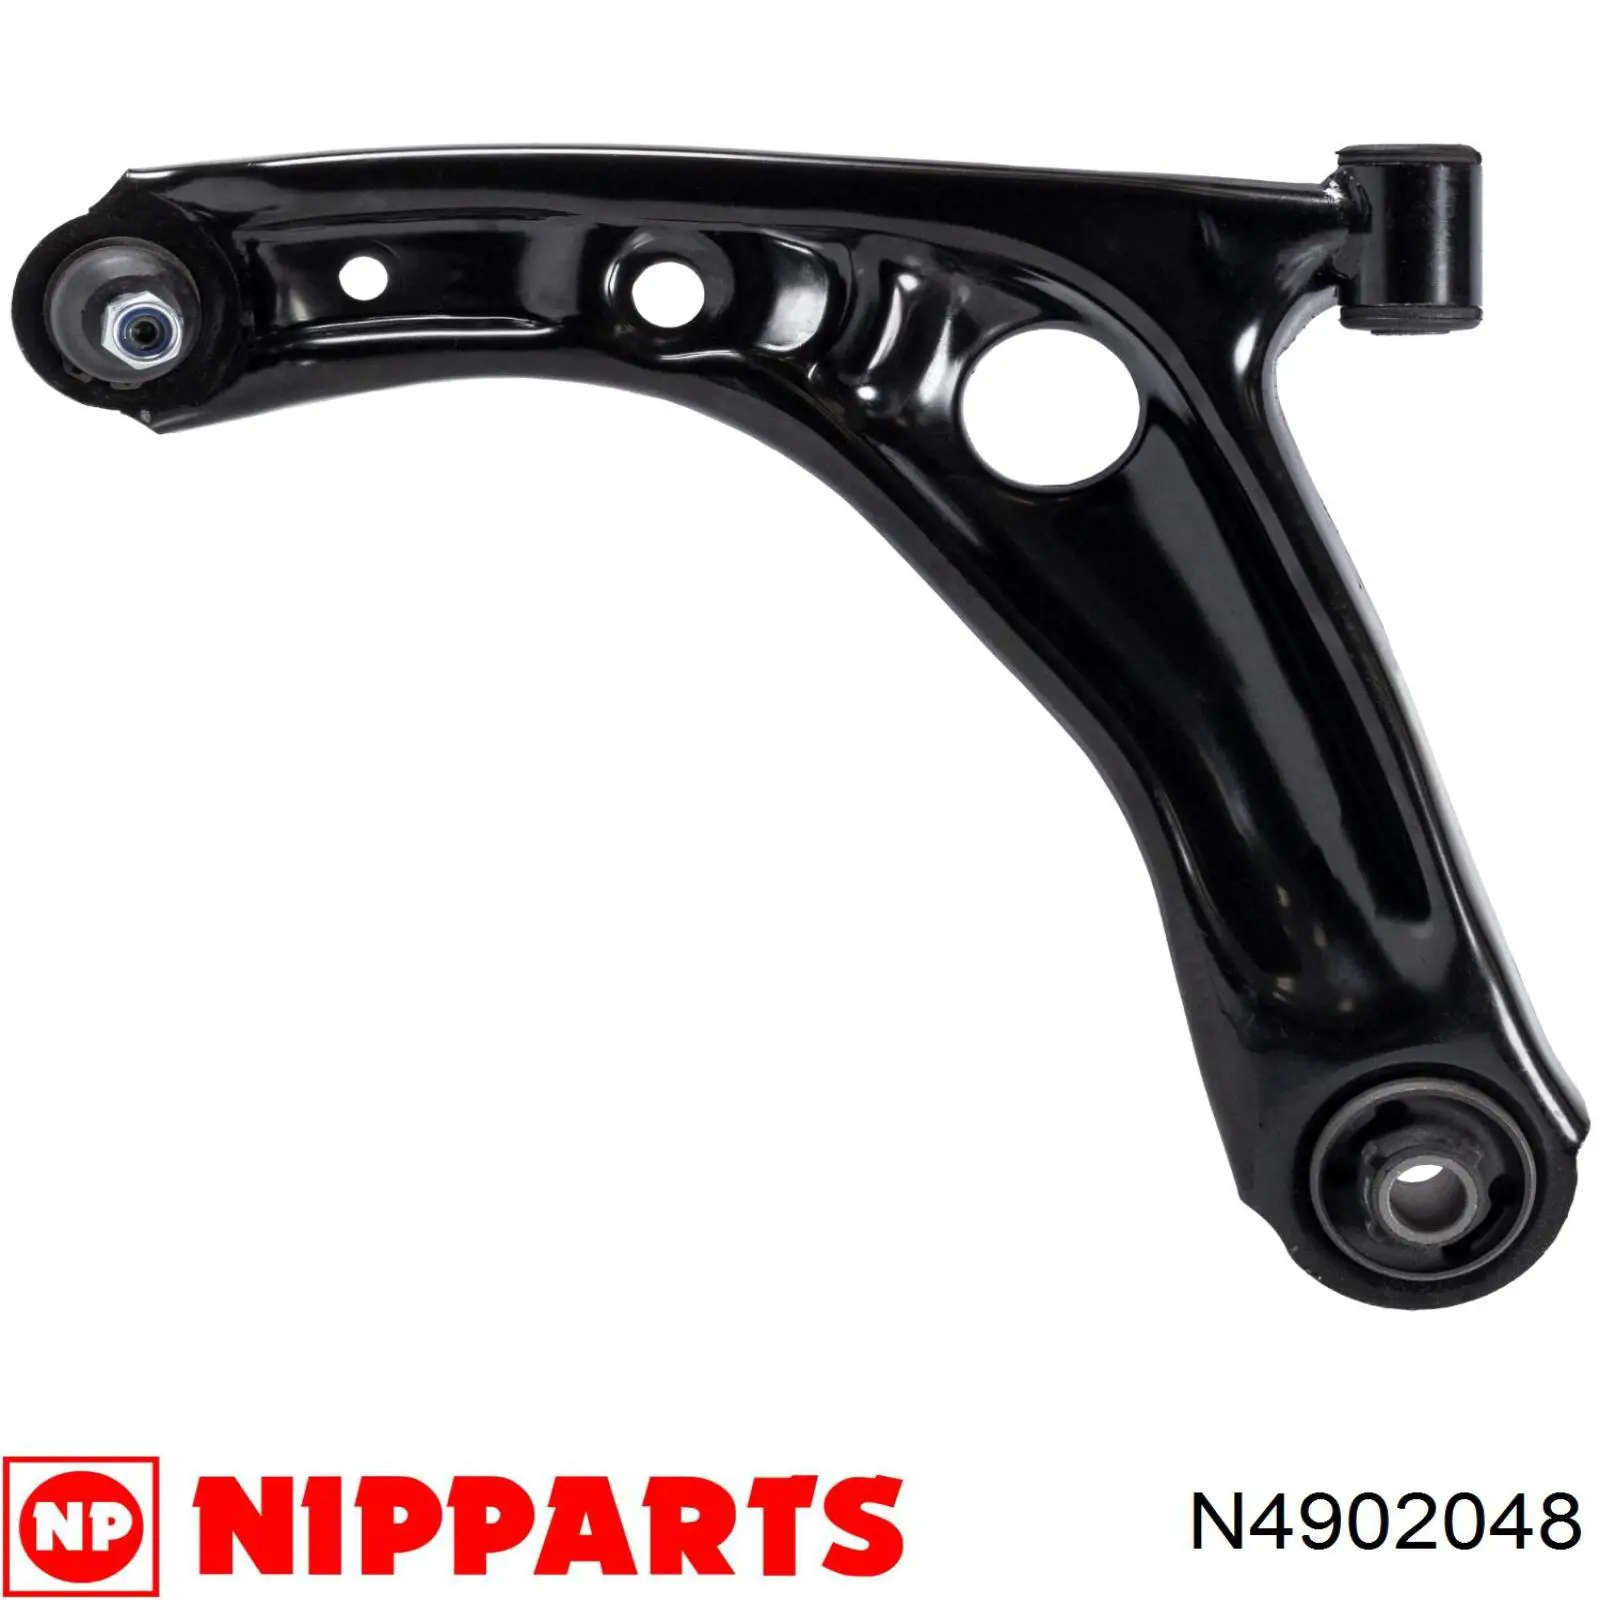 N4902048 Nipparts barra oscilante, suspensión de ruedas delantera, inferior izquierda